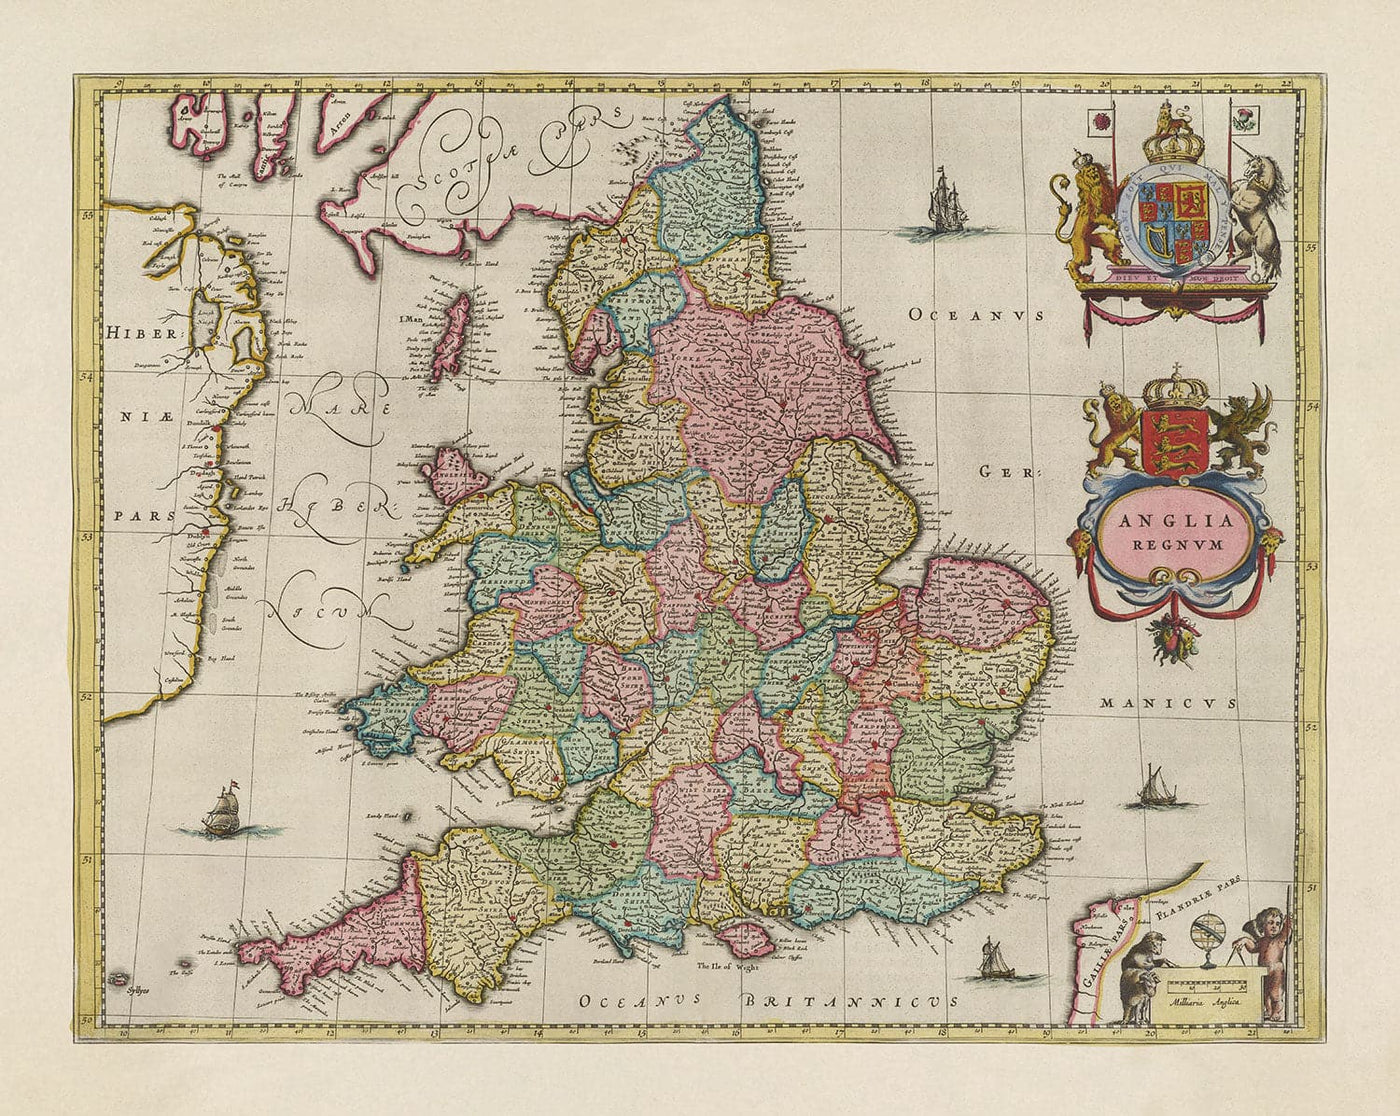 Alte Karte von England und Wales im Jahr 1665 von Joan Blaeu - Seltene Karte mit alten Grafschaften